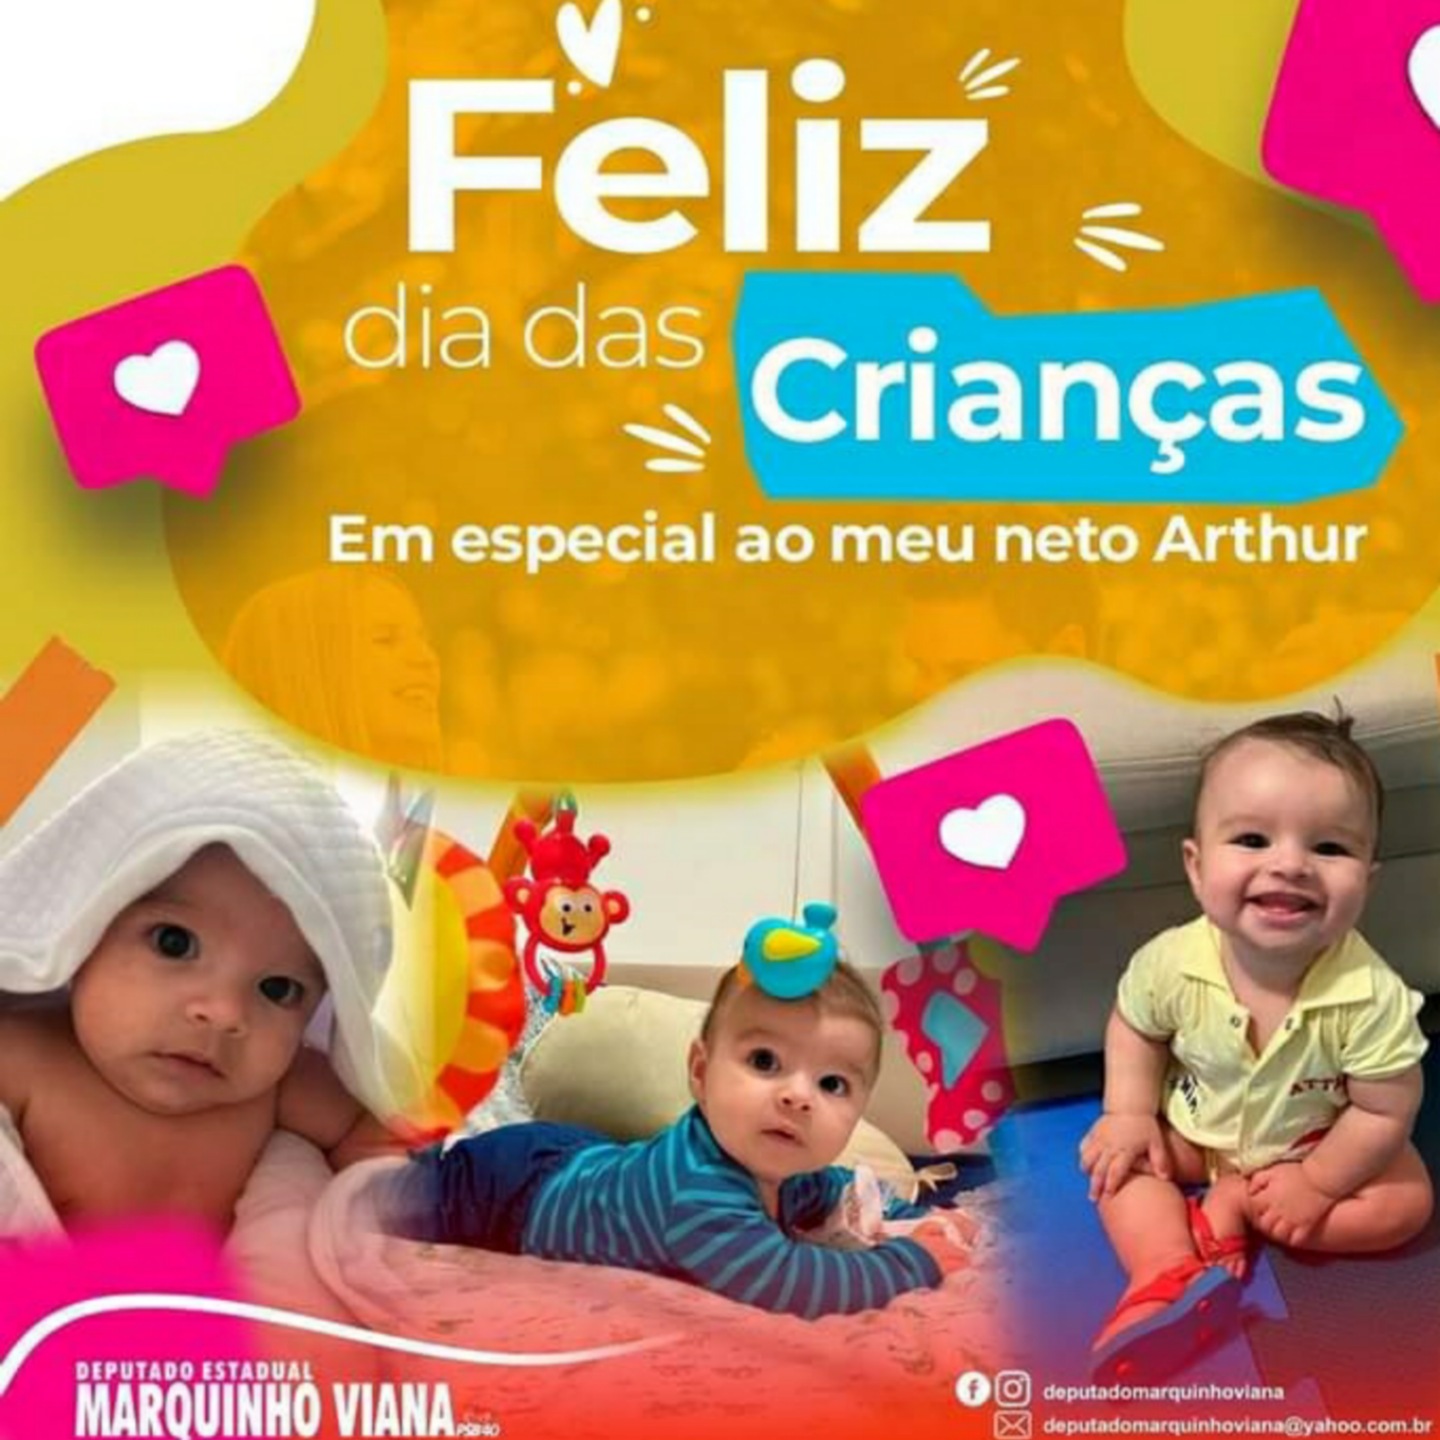 Deputado Marquinho Viana deseja um Feliz Dia das Crianças